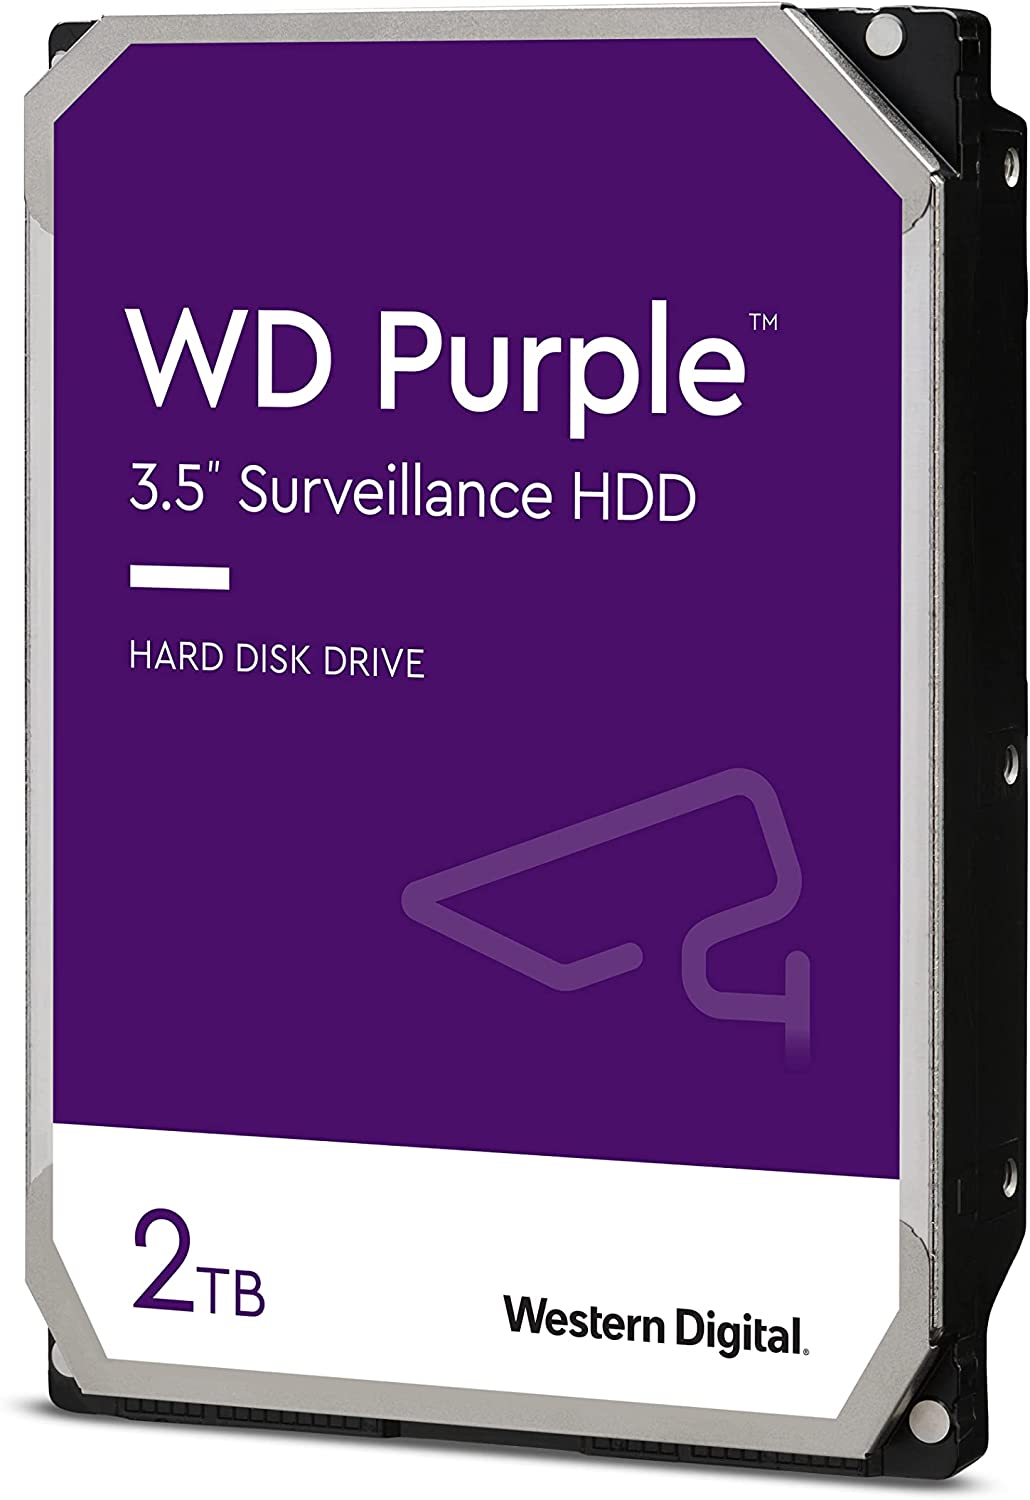 Western Digital 2TB WD Purple Surveillance Internal Hard Drive HDD - SATA 6 Gb/s, 64 MB Cache, 3.5" WD20PURZ